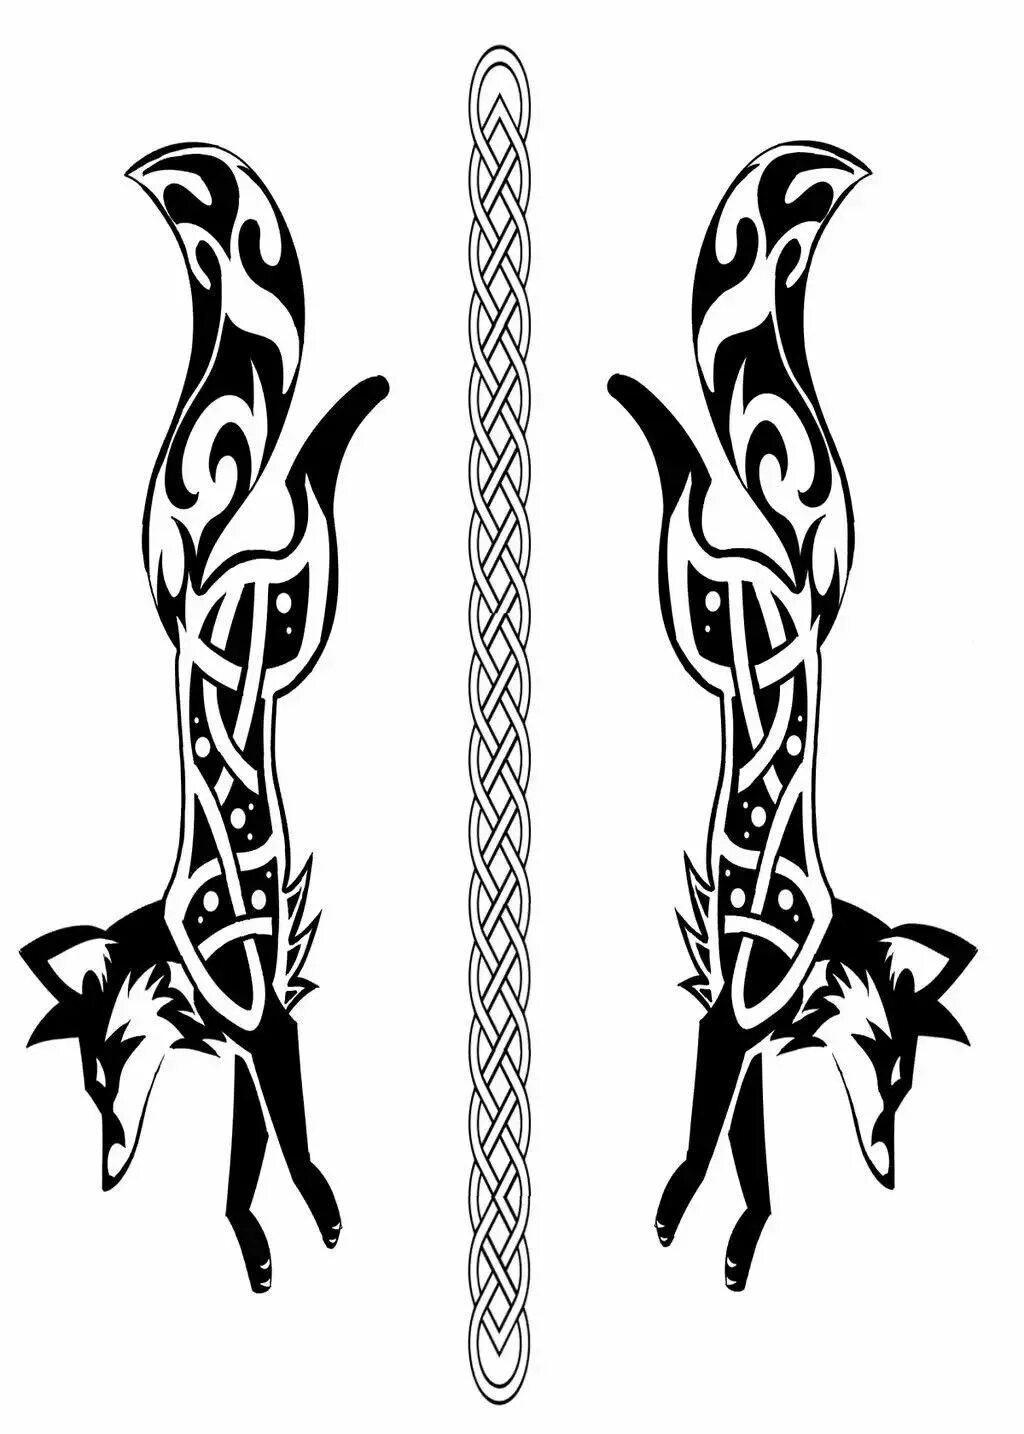 Рисунок на лезвие ножа. Скандинавские узоры и орнаменты для травления на топоре. Рисунок на ноже эскизы для травления. Кельтский орнамент.